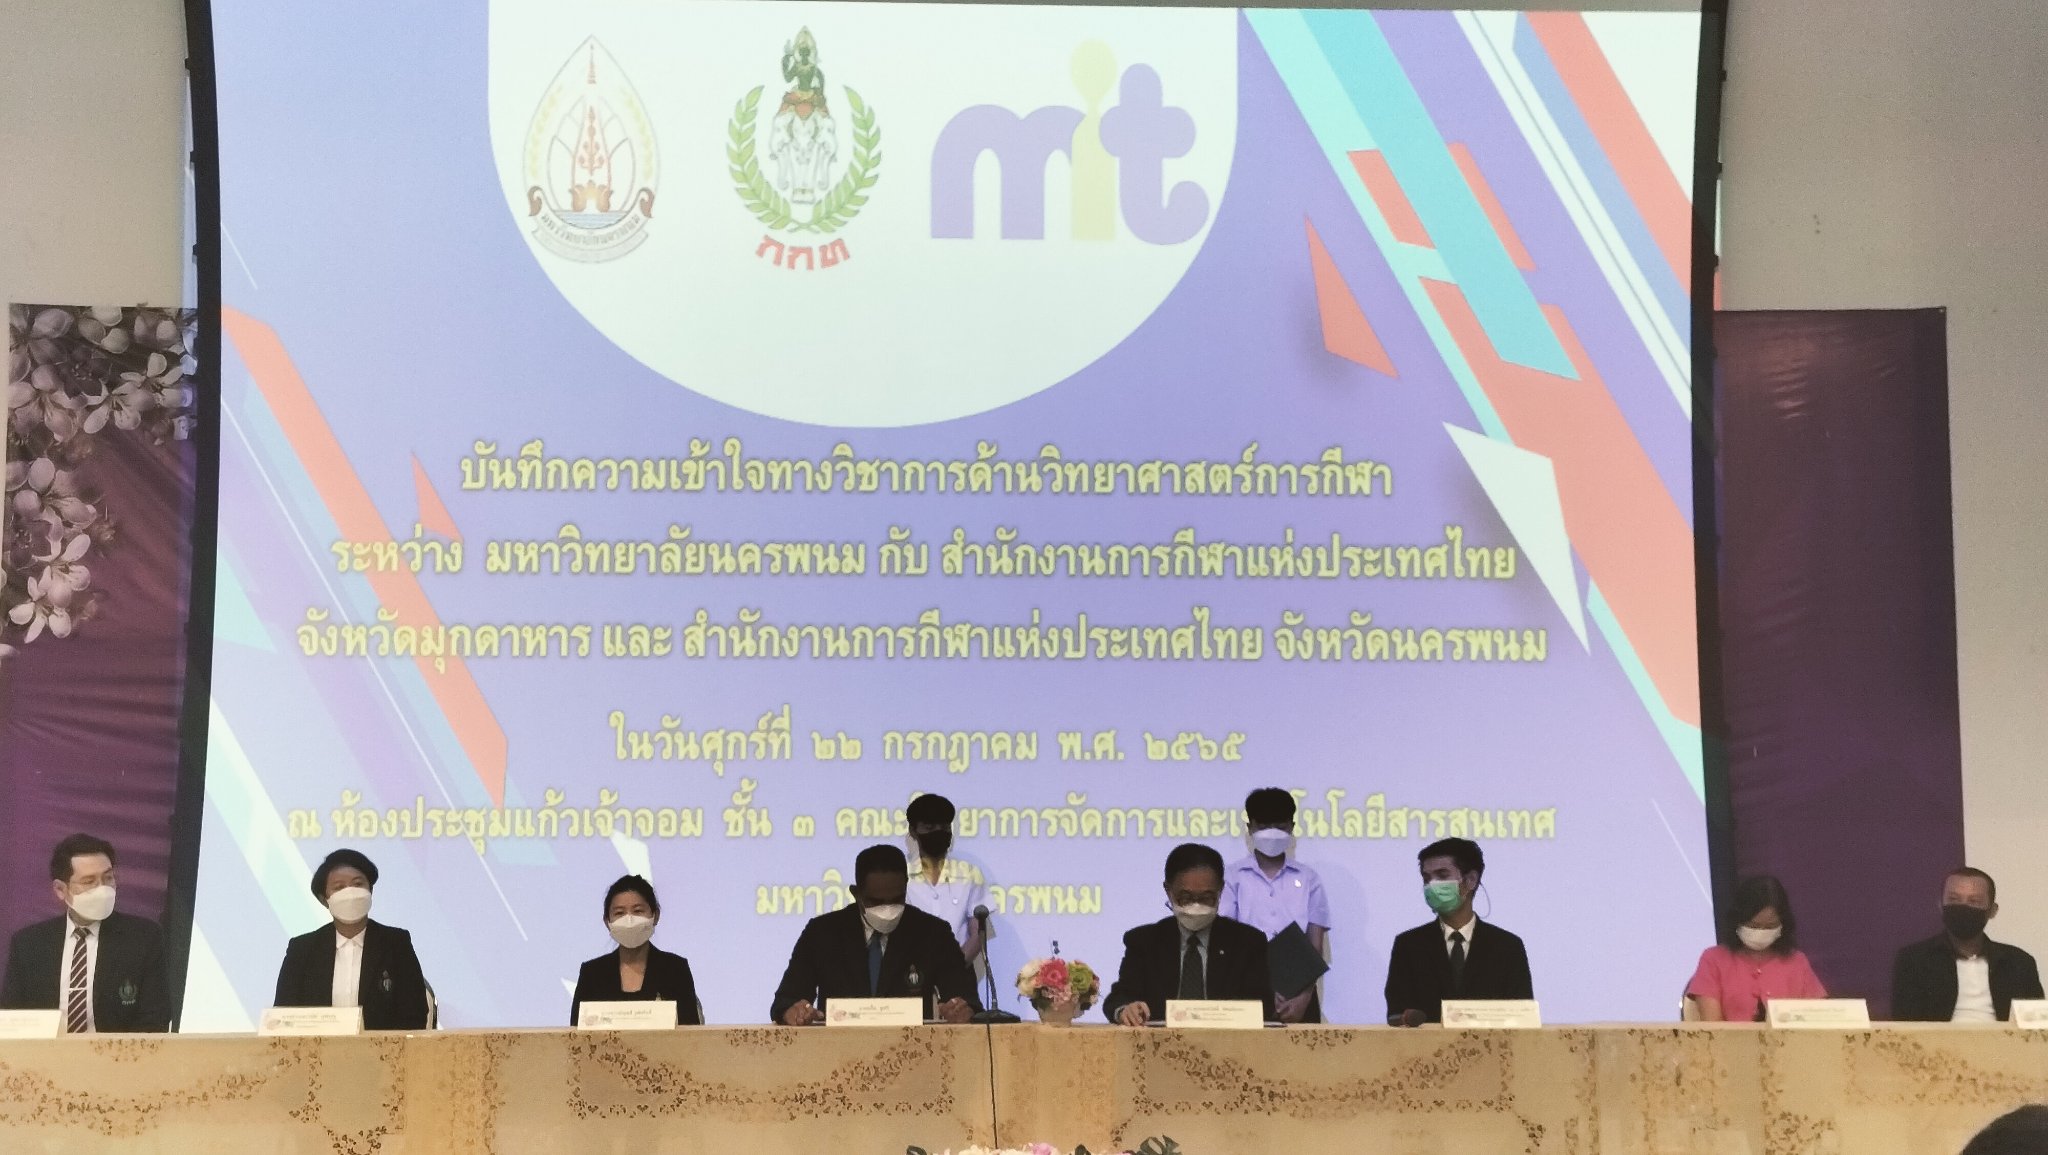 พิธีลงนามบันทึกข้อตกลงความร่วมมือระหว่างมหาวิทยาลัยนครพนม กับ การกีฬาแห่งประเทศไทย